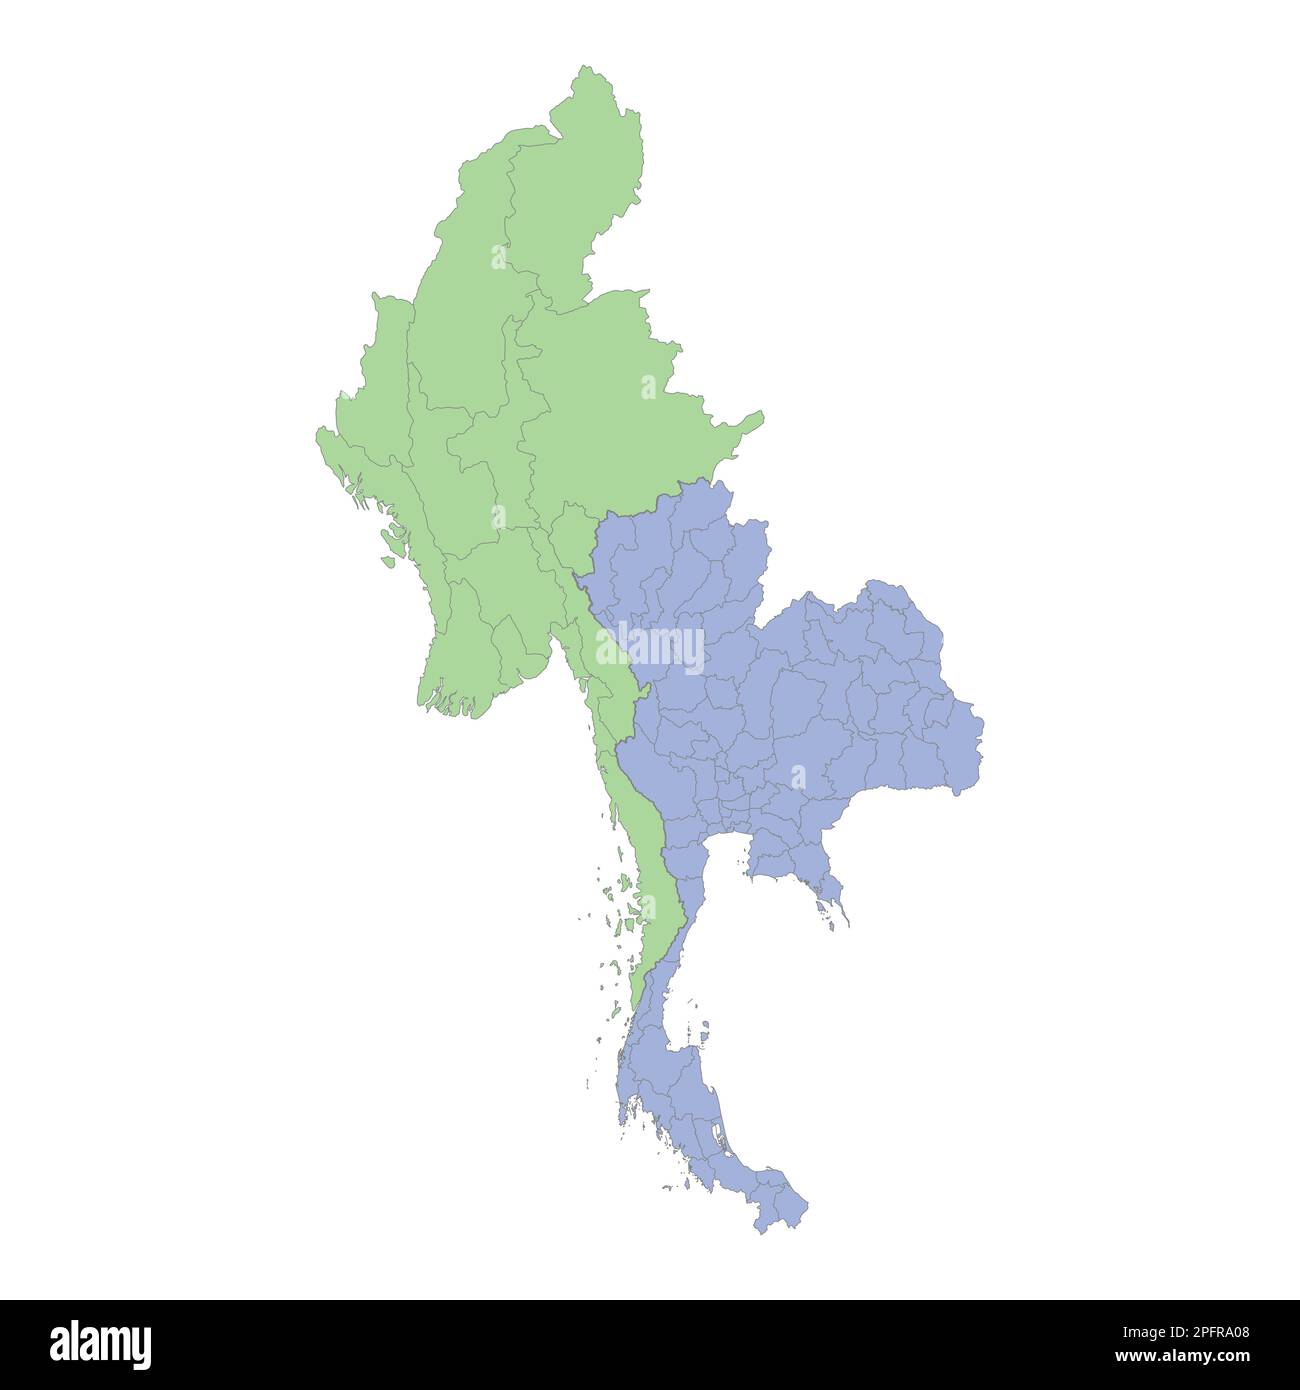 Mappa politica di alta qualità di Thailandia e Myanmar con i confini delle regioni o province. Illustrazione vettoriale Illustrazione Vettoriale